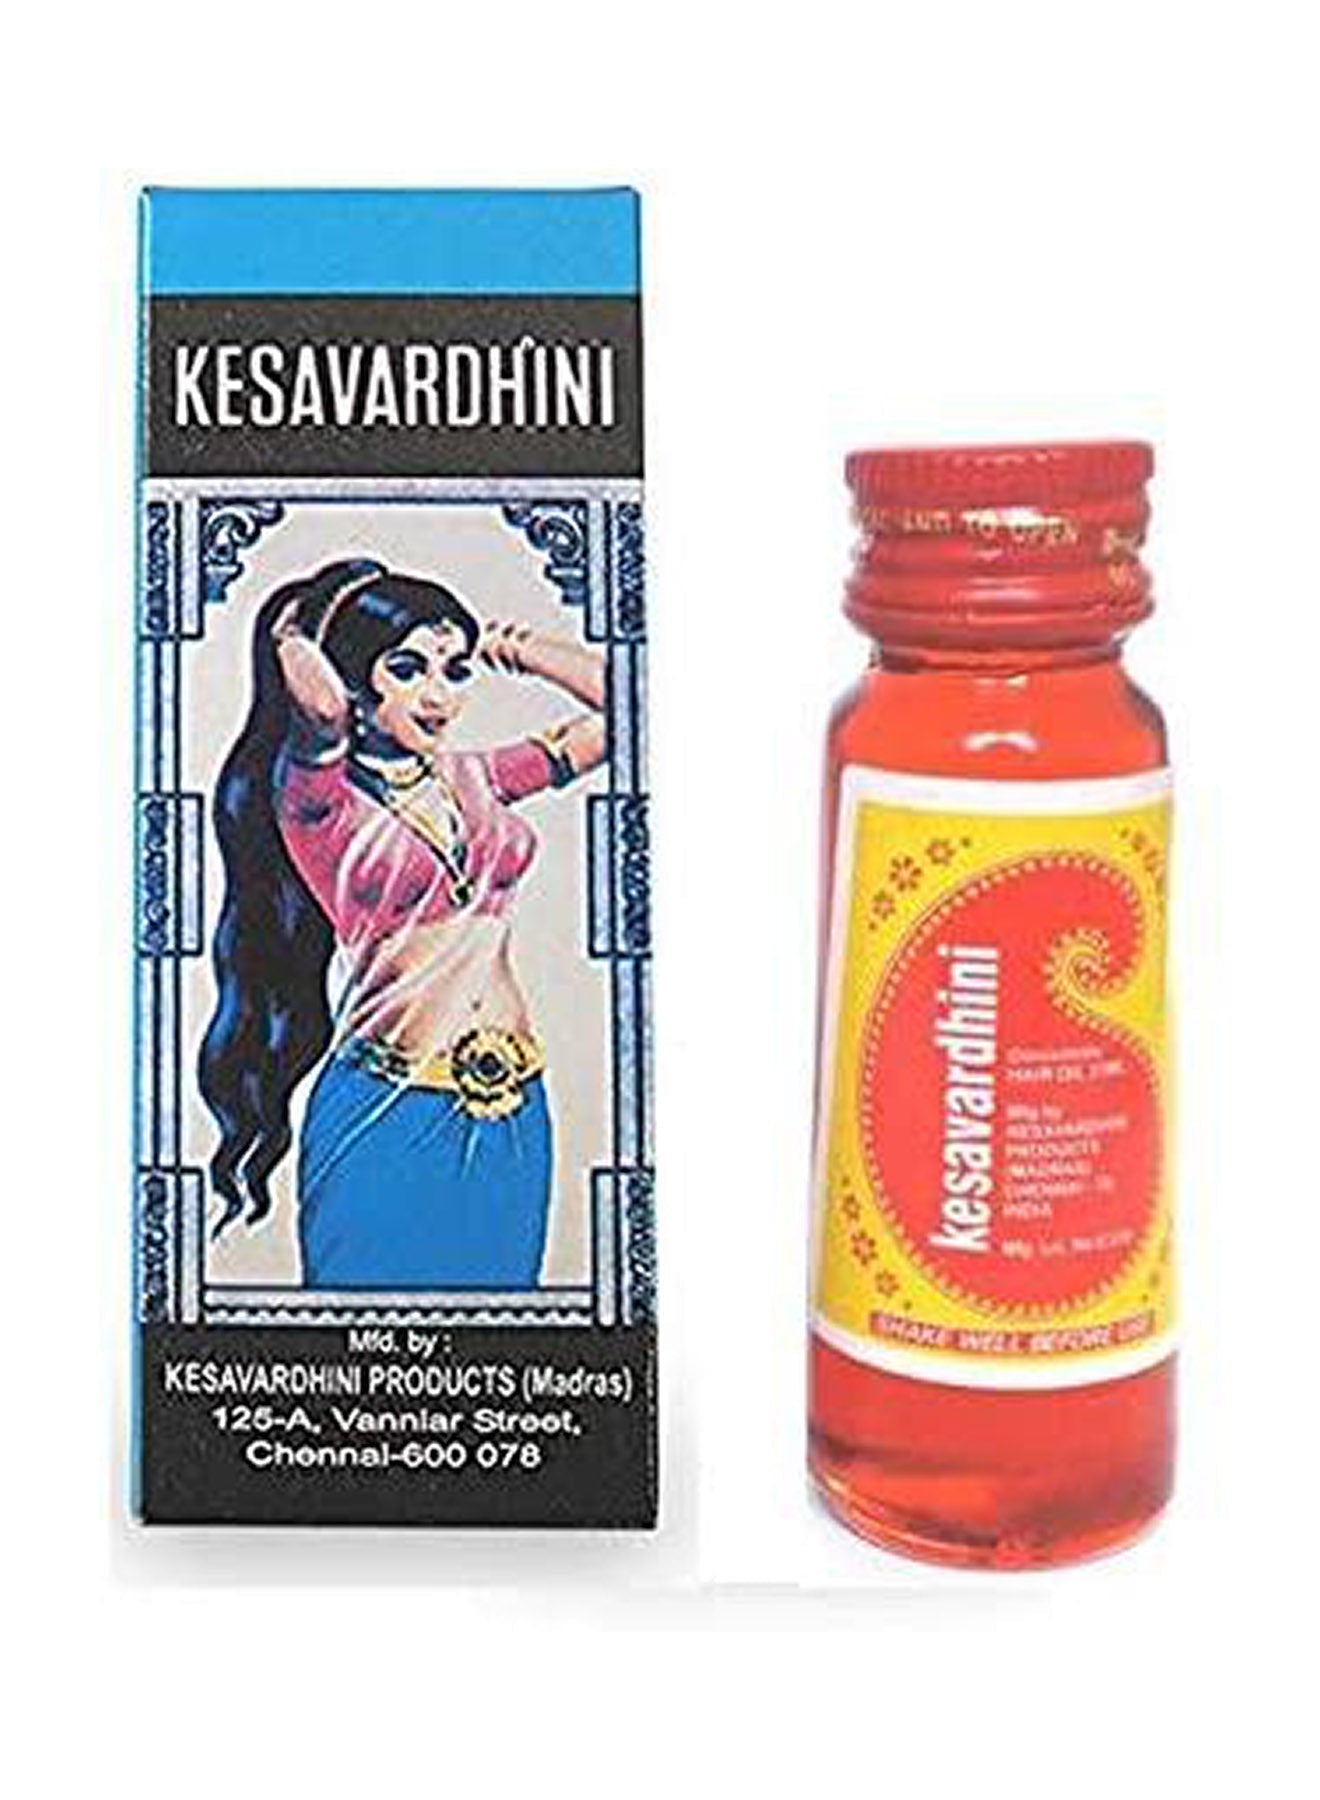 Kesavardhini Hair Oil For Healthy Hair  25 ml Value Pack of 2 